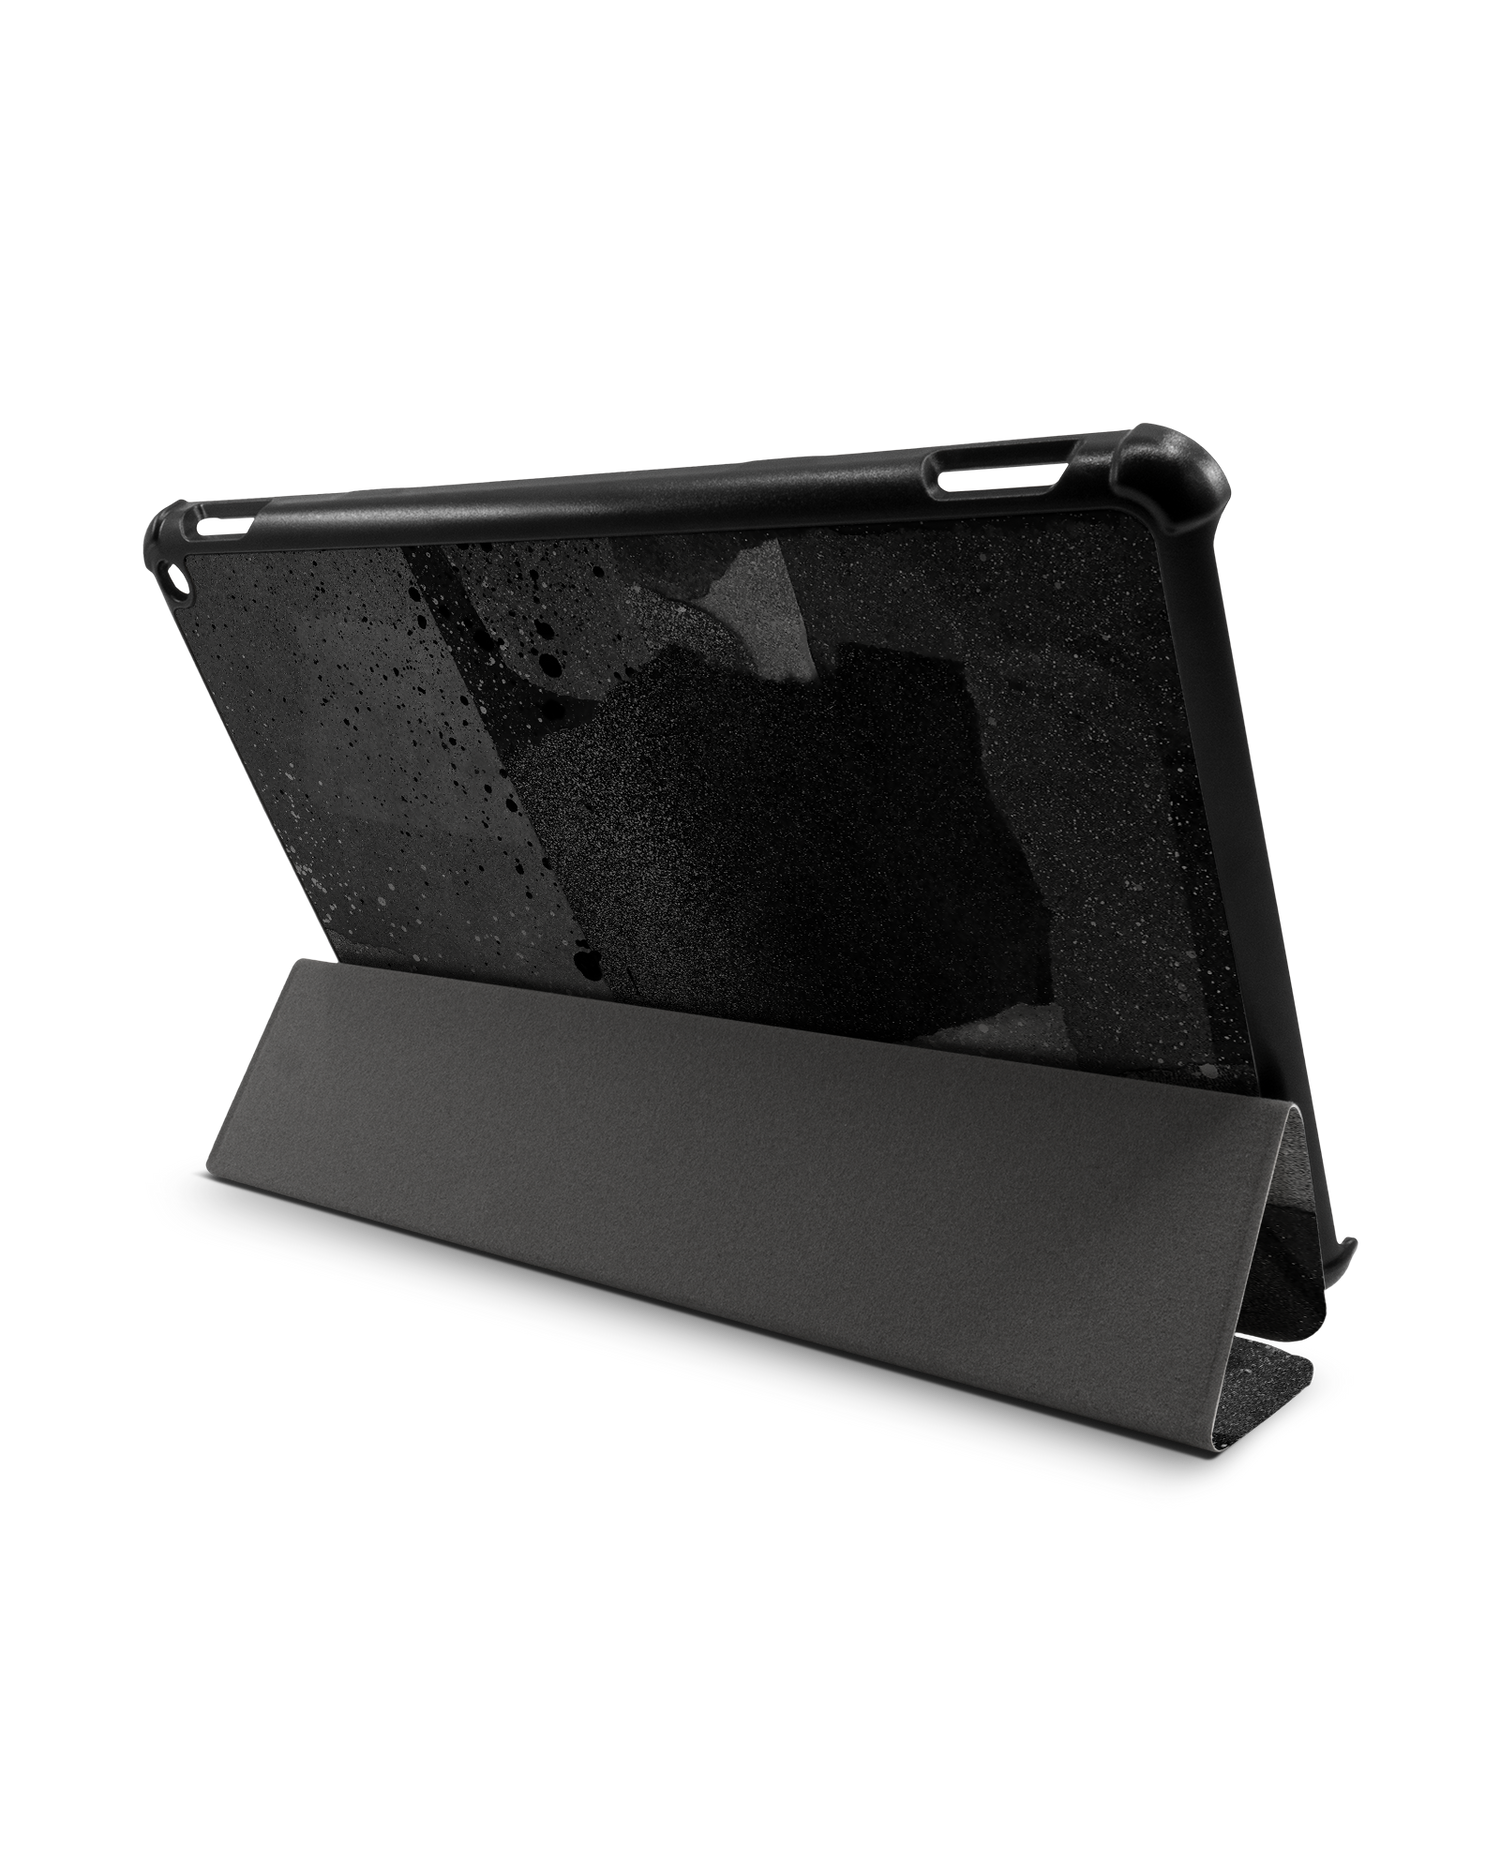 Torn Paper Collage Tablet Smart Case für Amazon Fire HD 10 (2021): Aufgestellt im Querformat